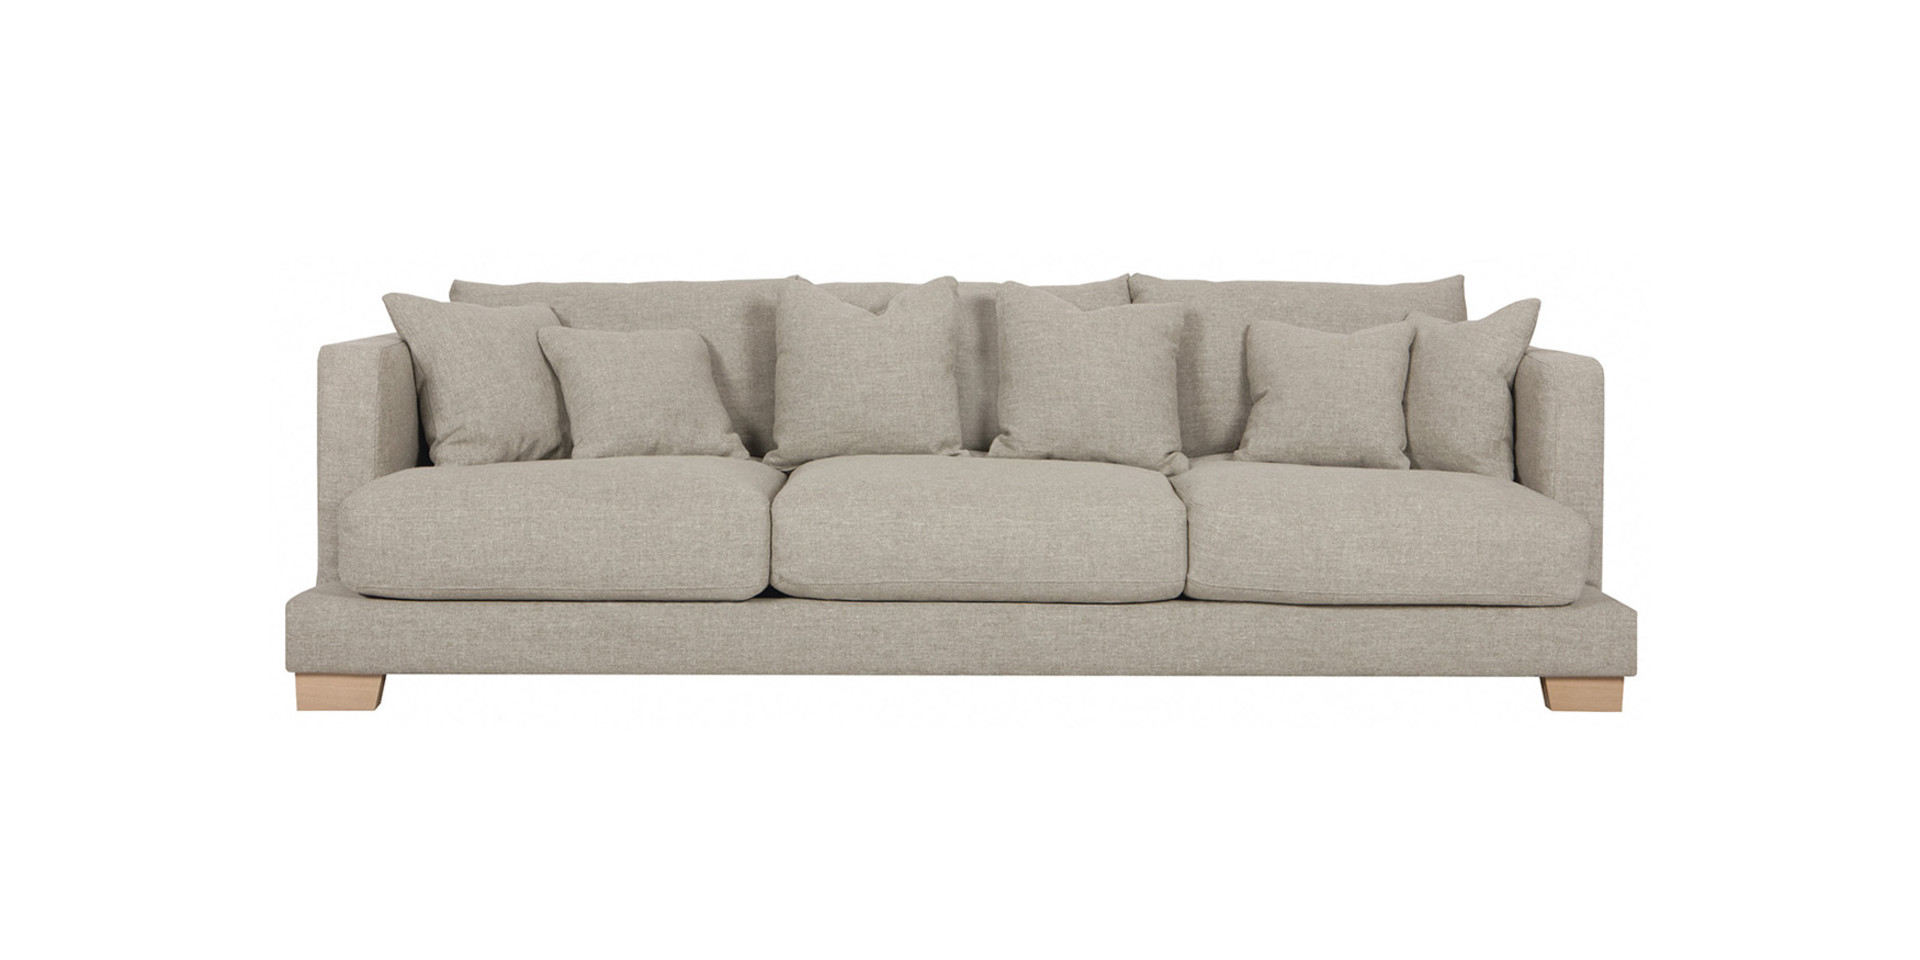 sofa COLORADO 3seater | od 6300 zł |10-12 tyg.